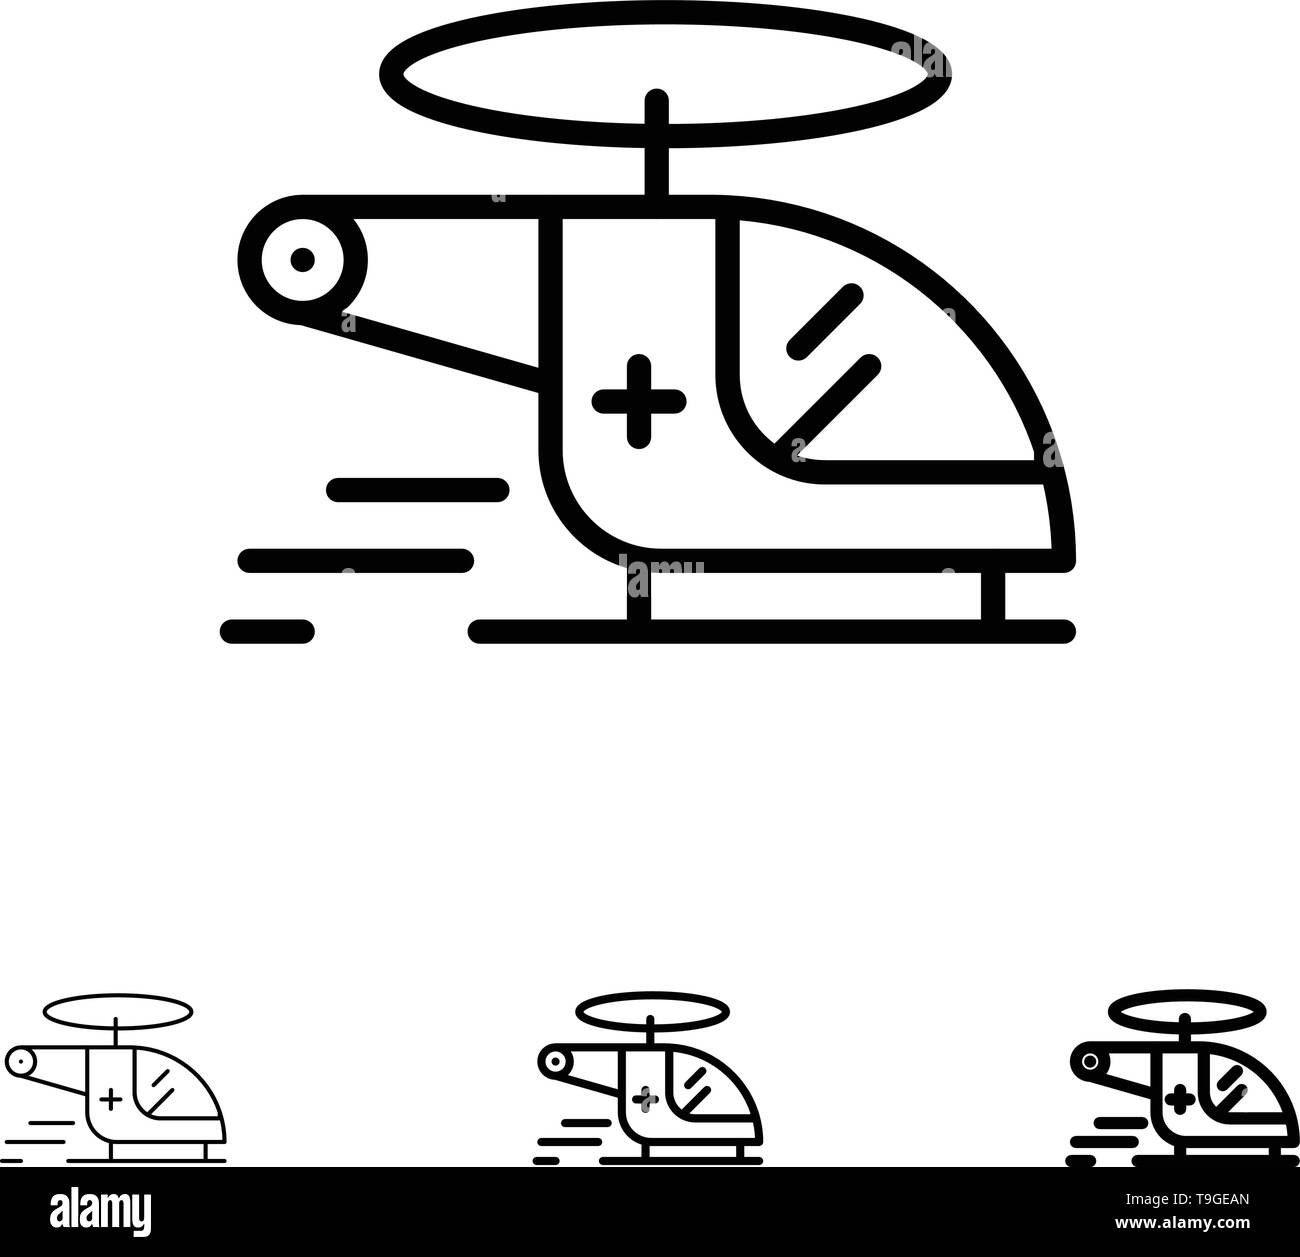 Hubschrauber, Häcksler, Medizinische, Krankenwagen, Fett und dünne schwarze Linie Icon Set Stock Vektor